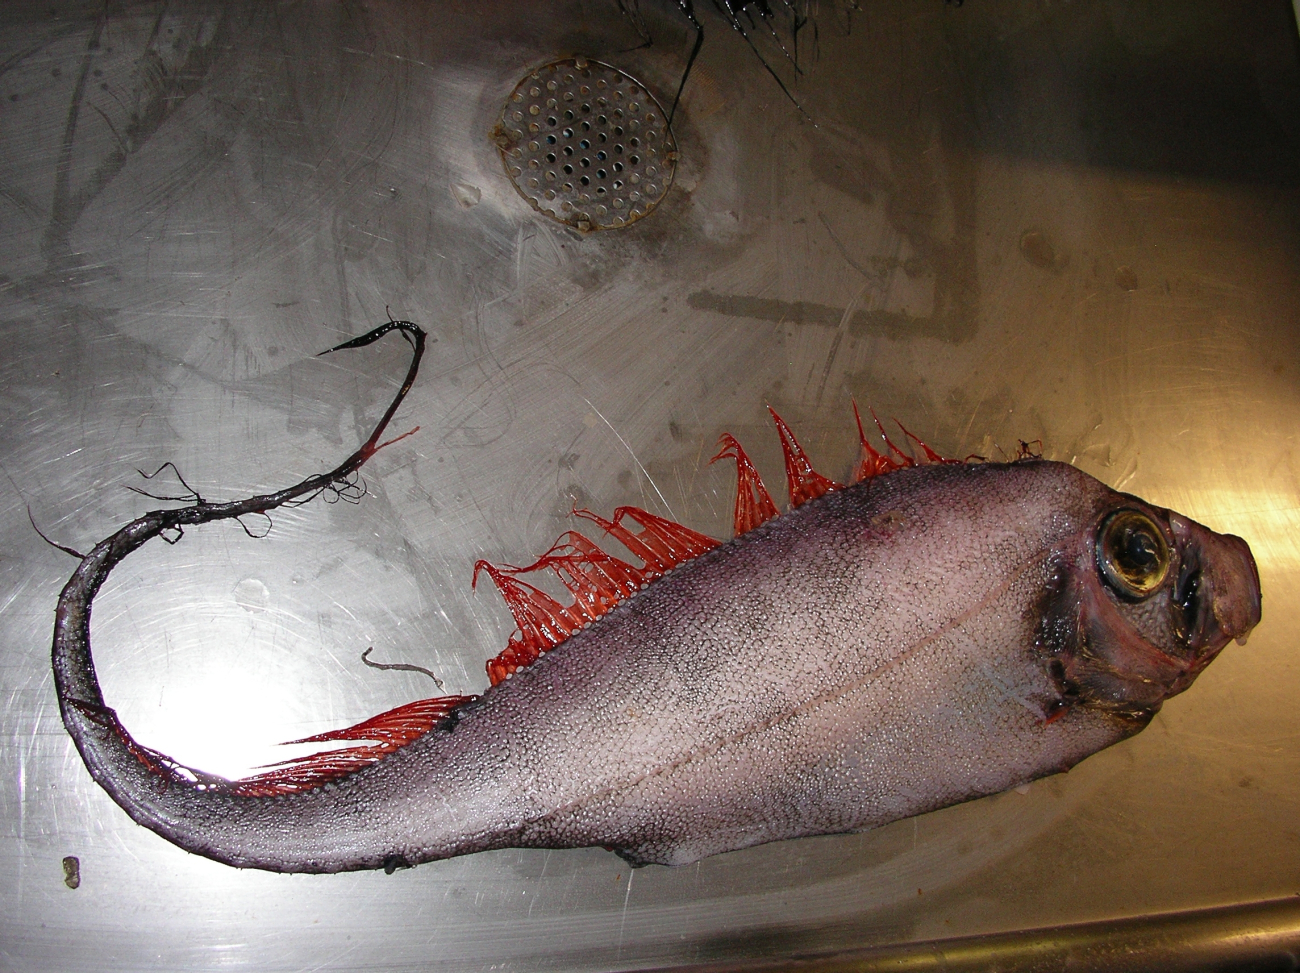 Scalloped ribbonfish (Zu cristatus)